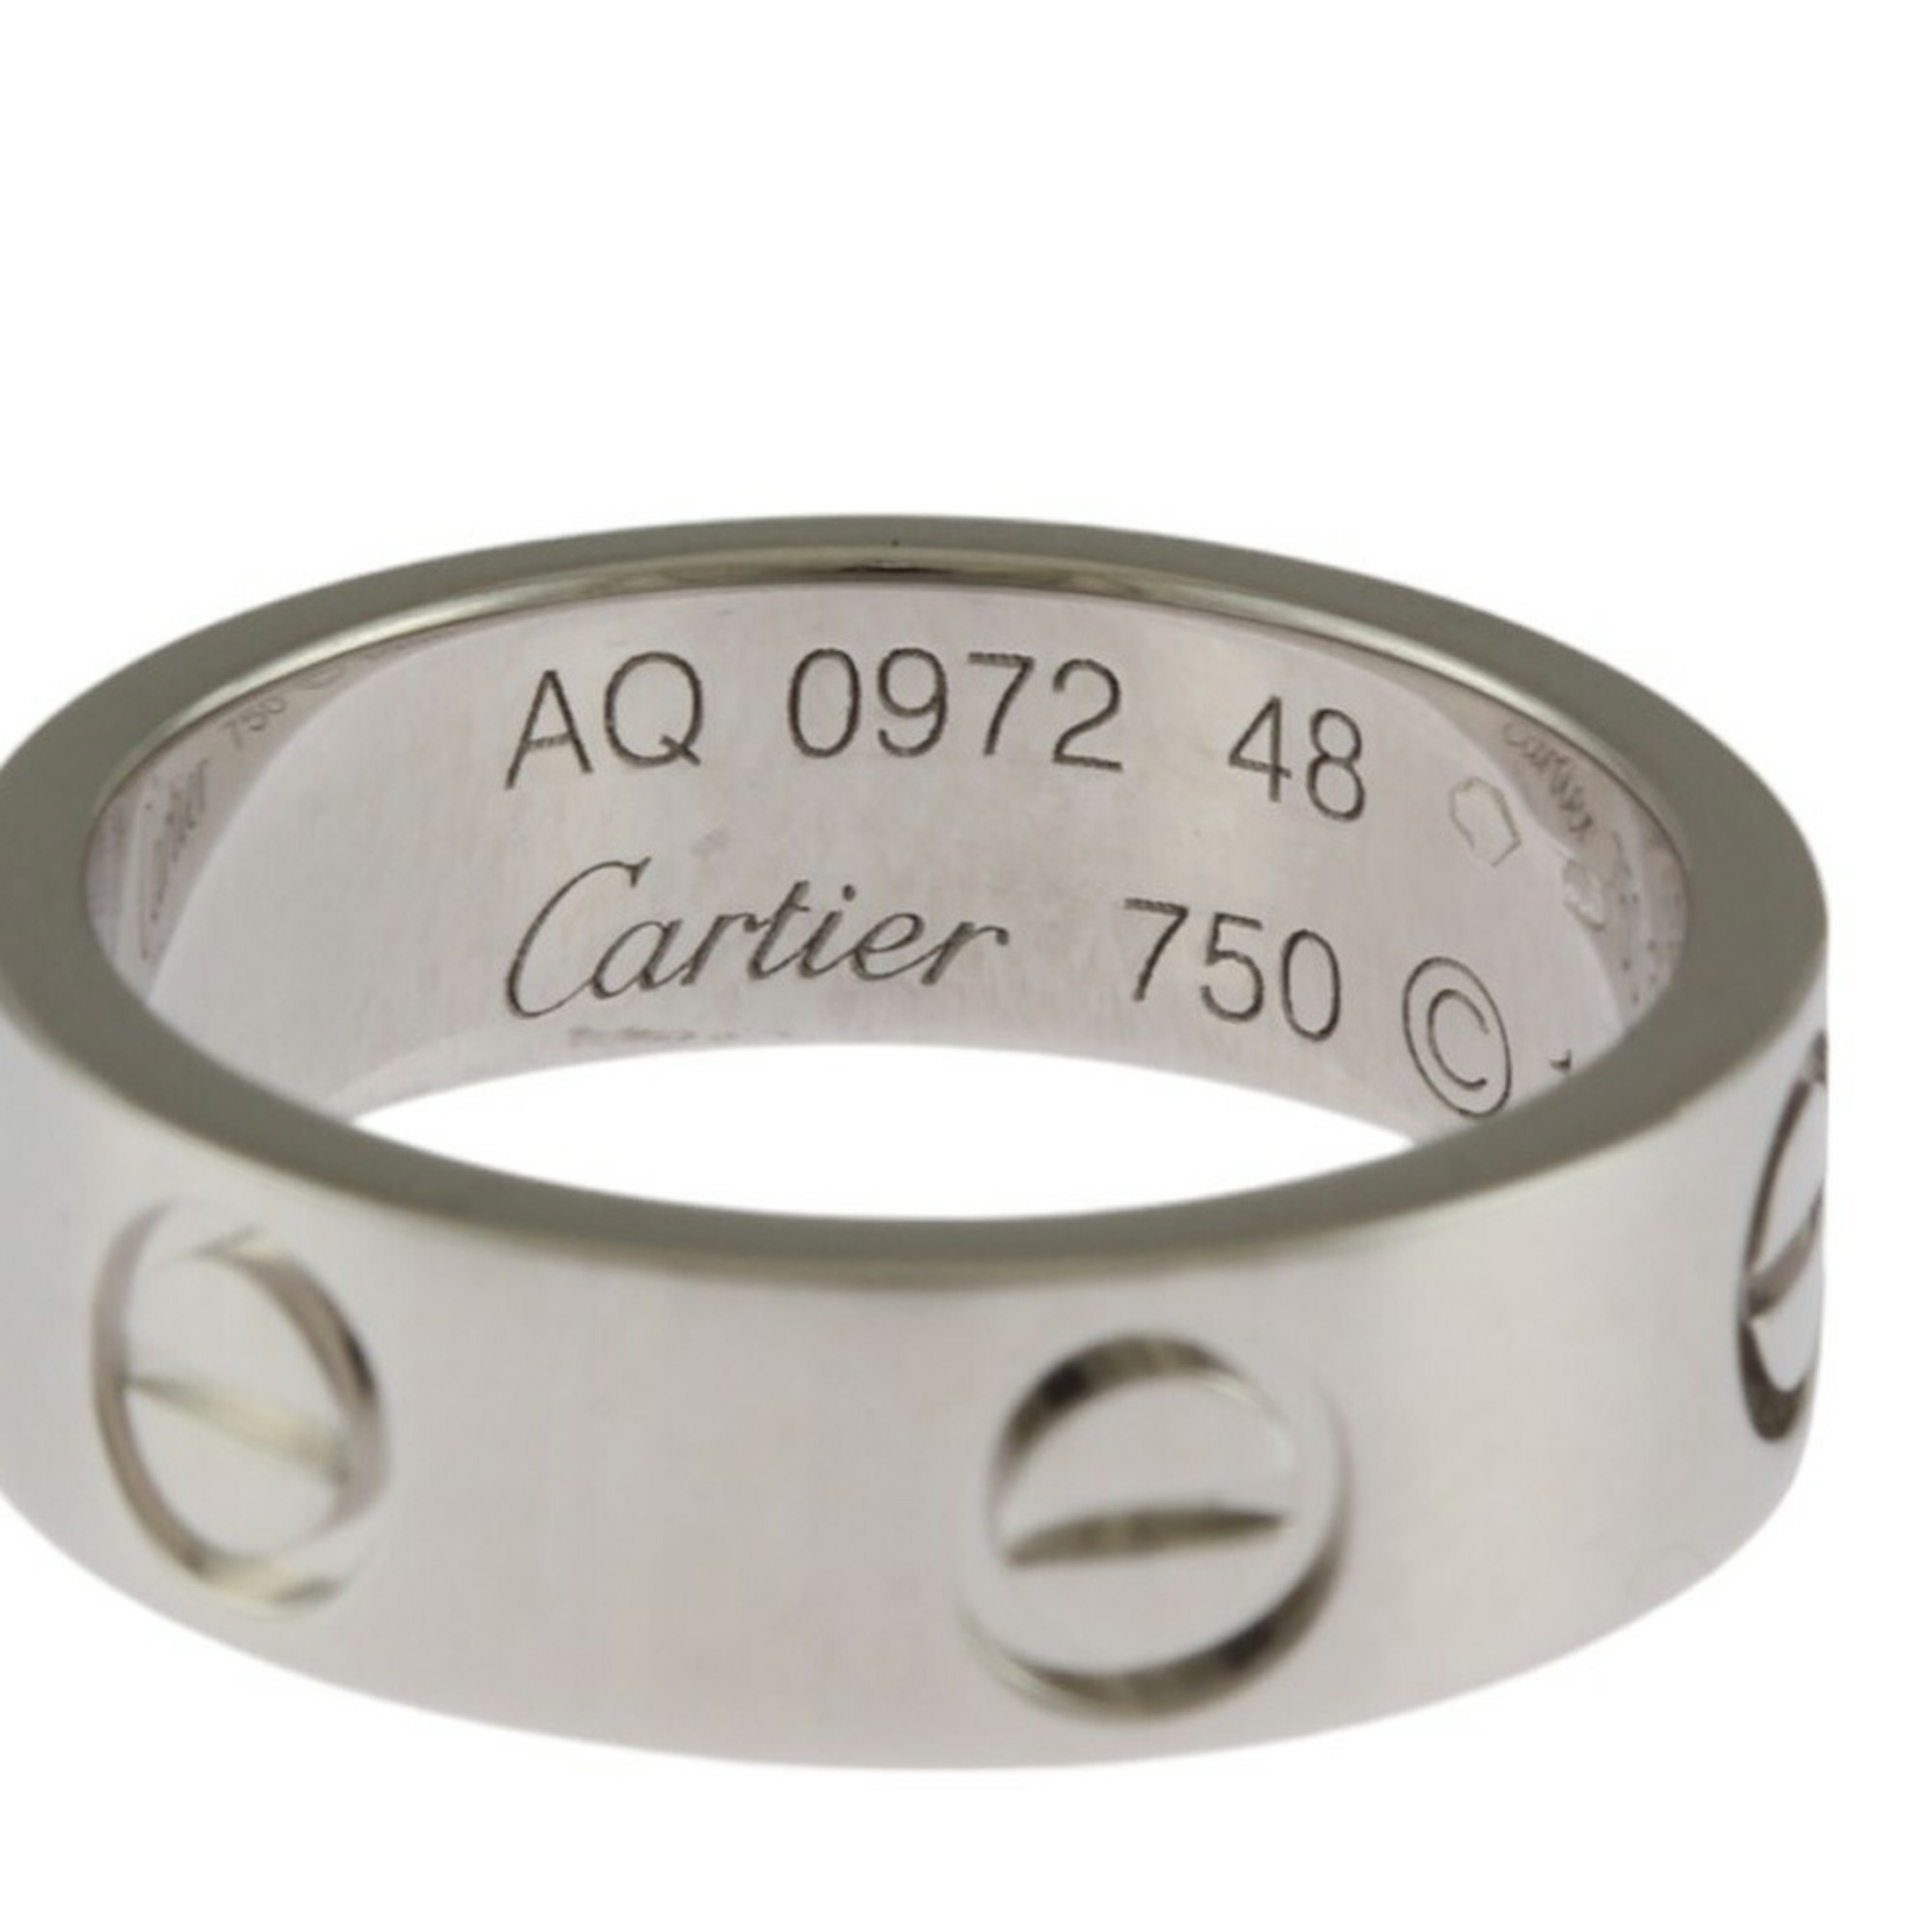 Cartier Love Ring, Size 7.5, 18k Gold, Women's, CARTIER